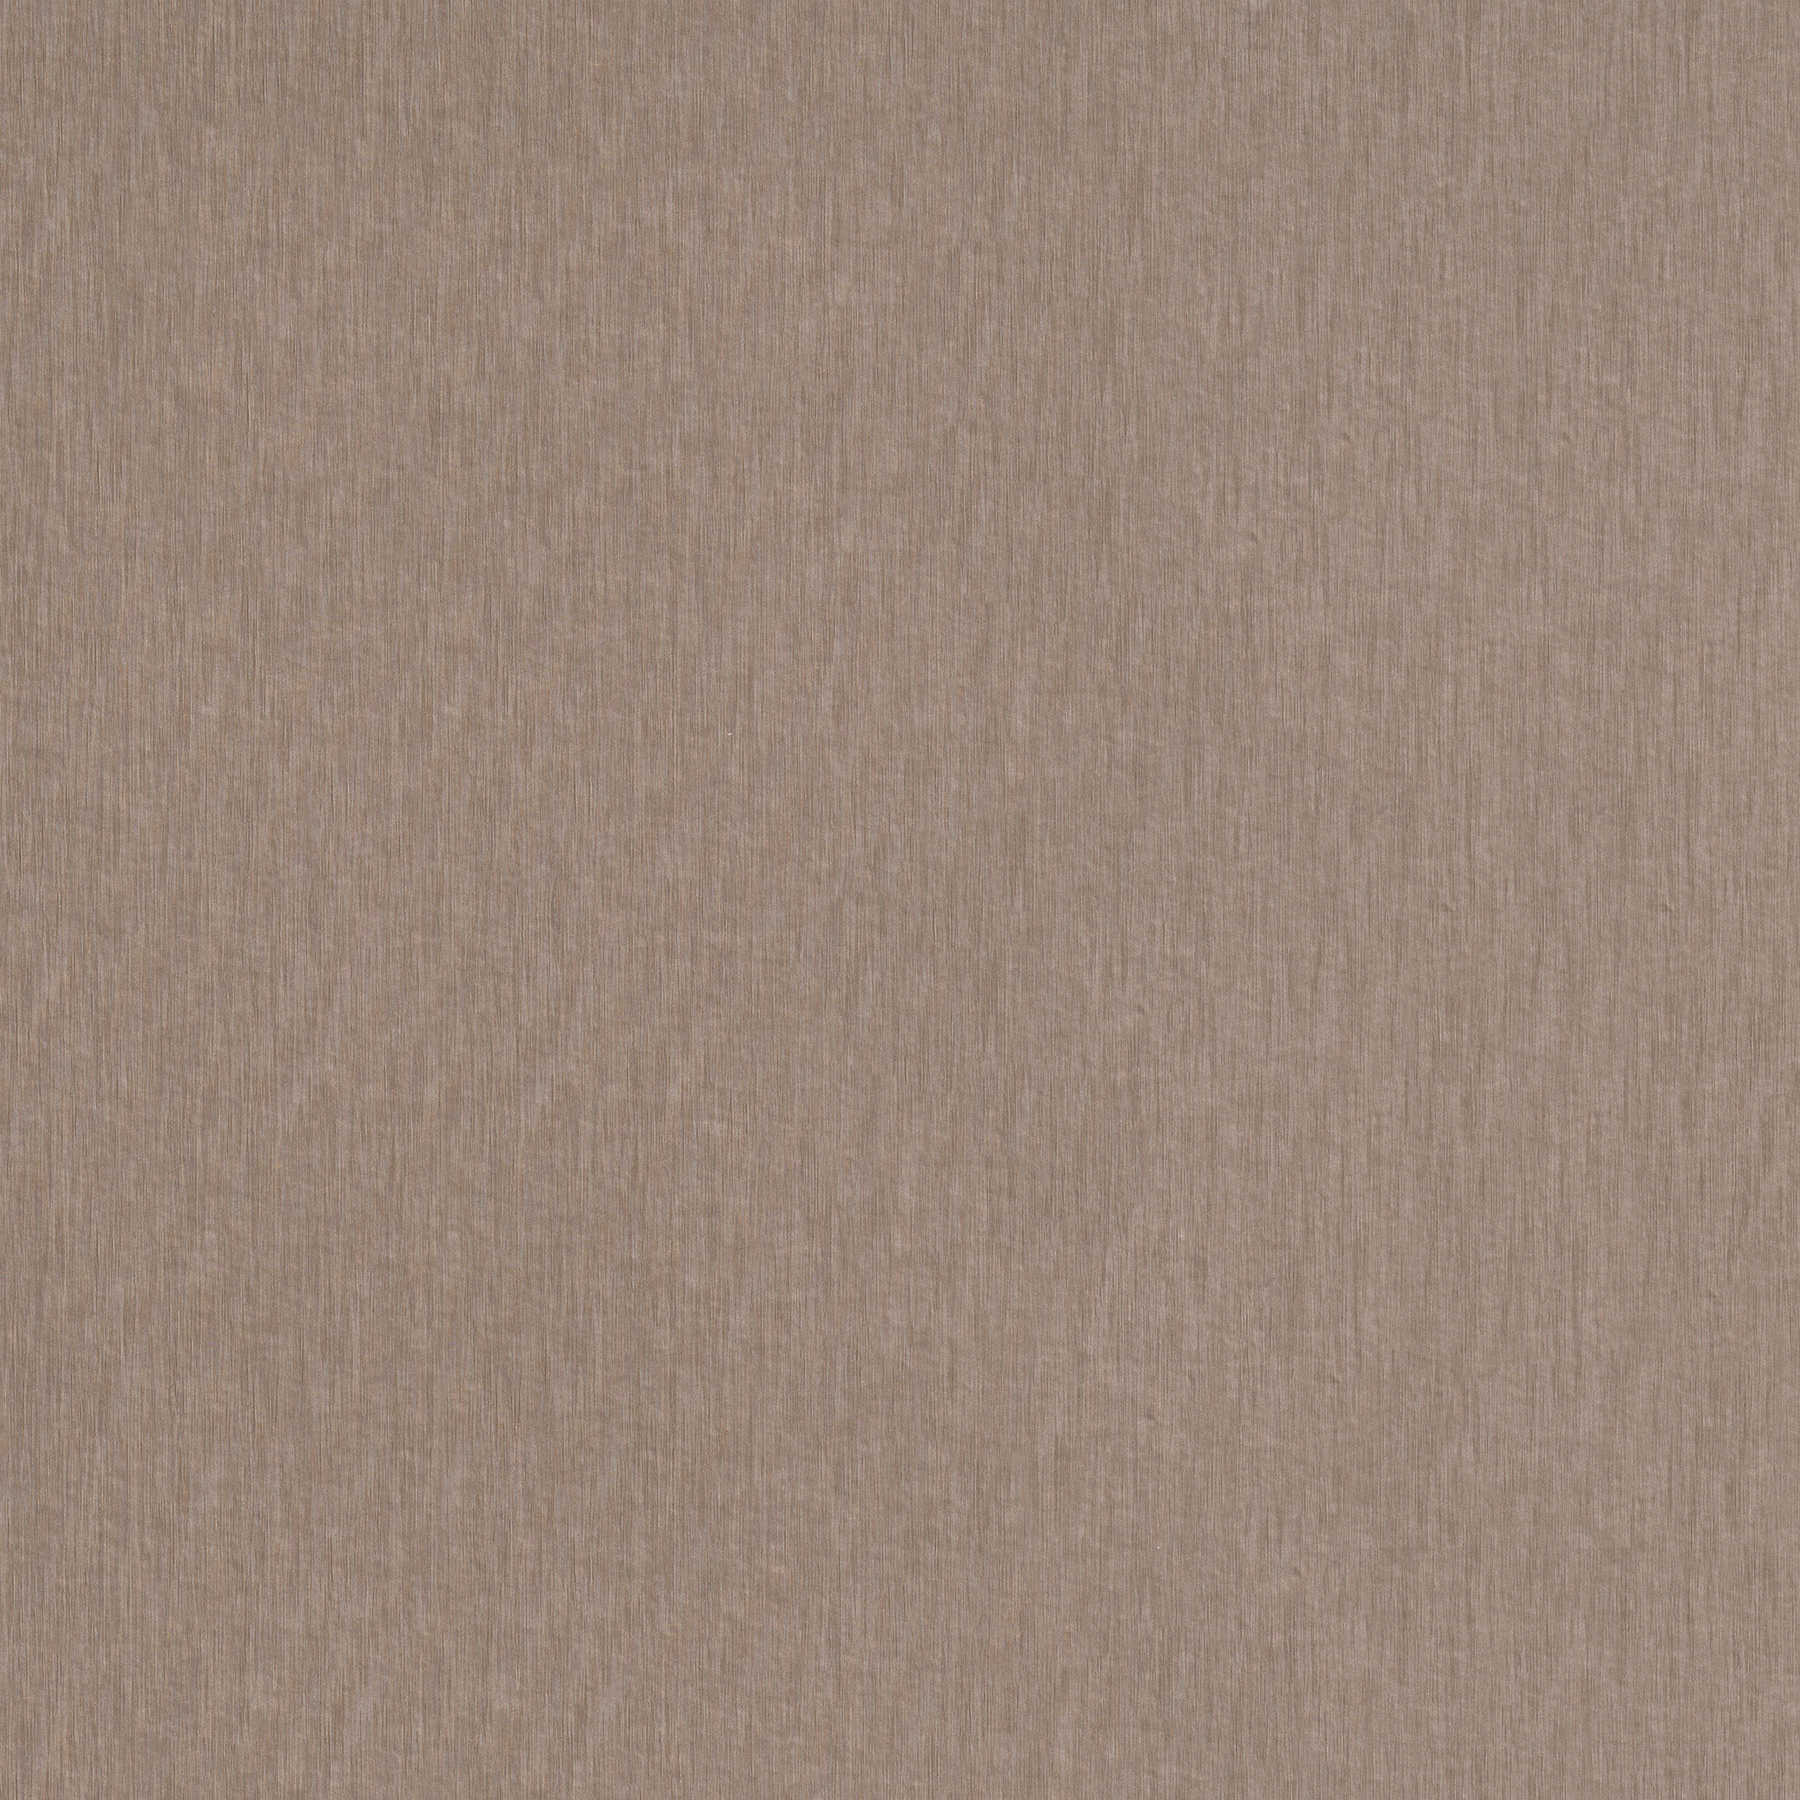 Magnetic wallpaper, self-adhesive panel - brown, grey
